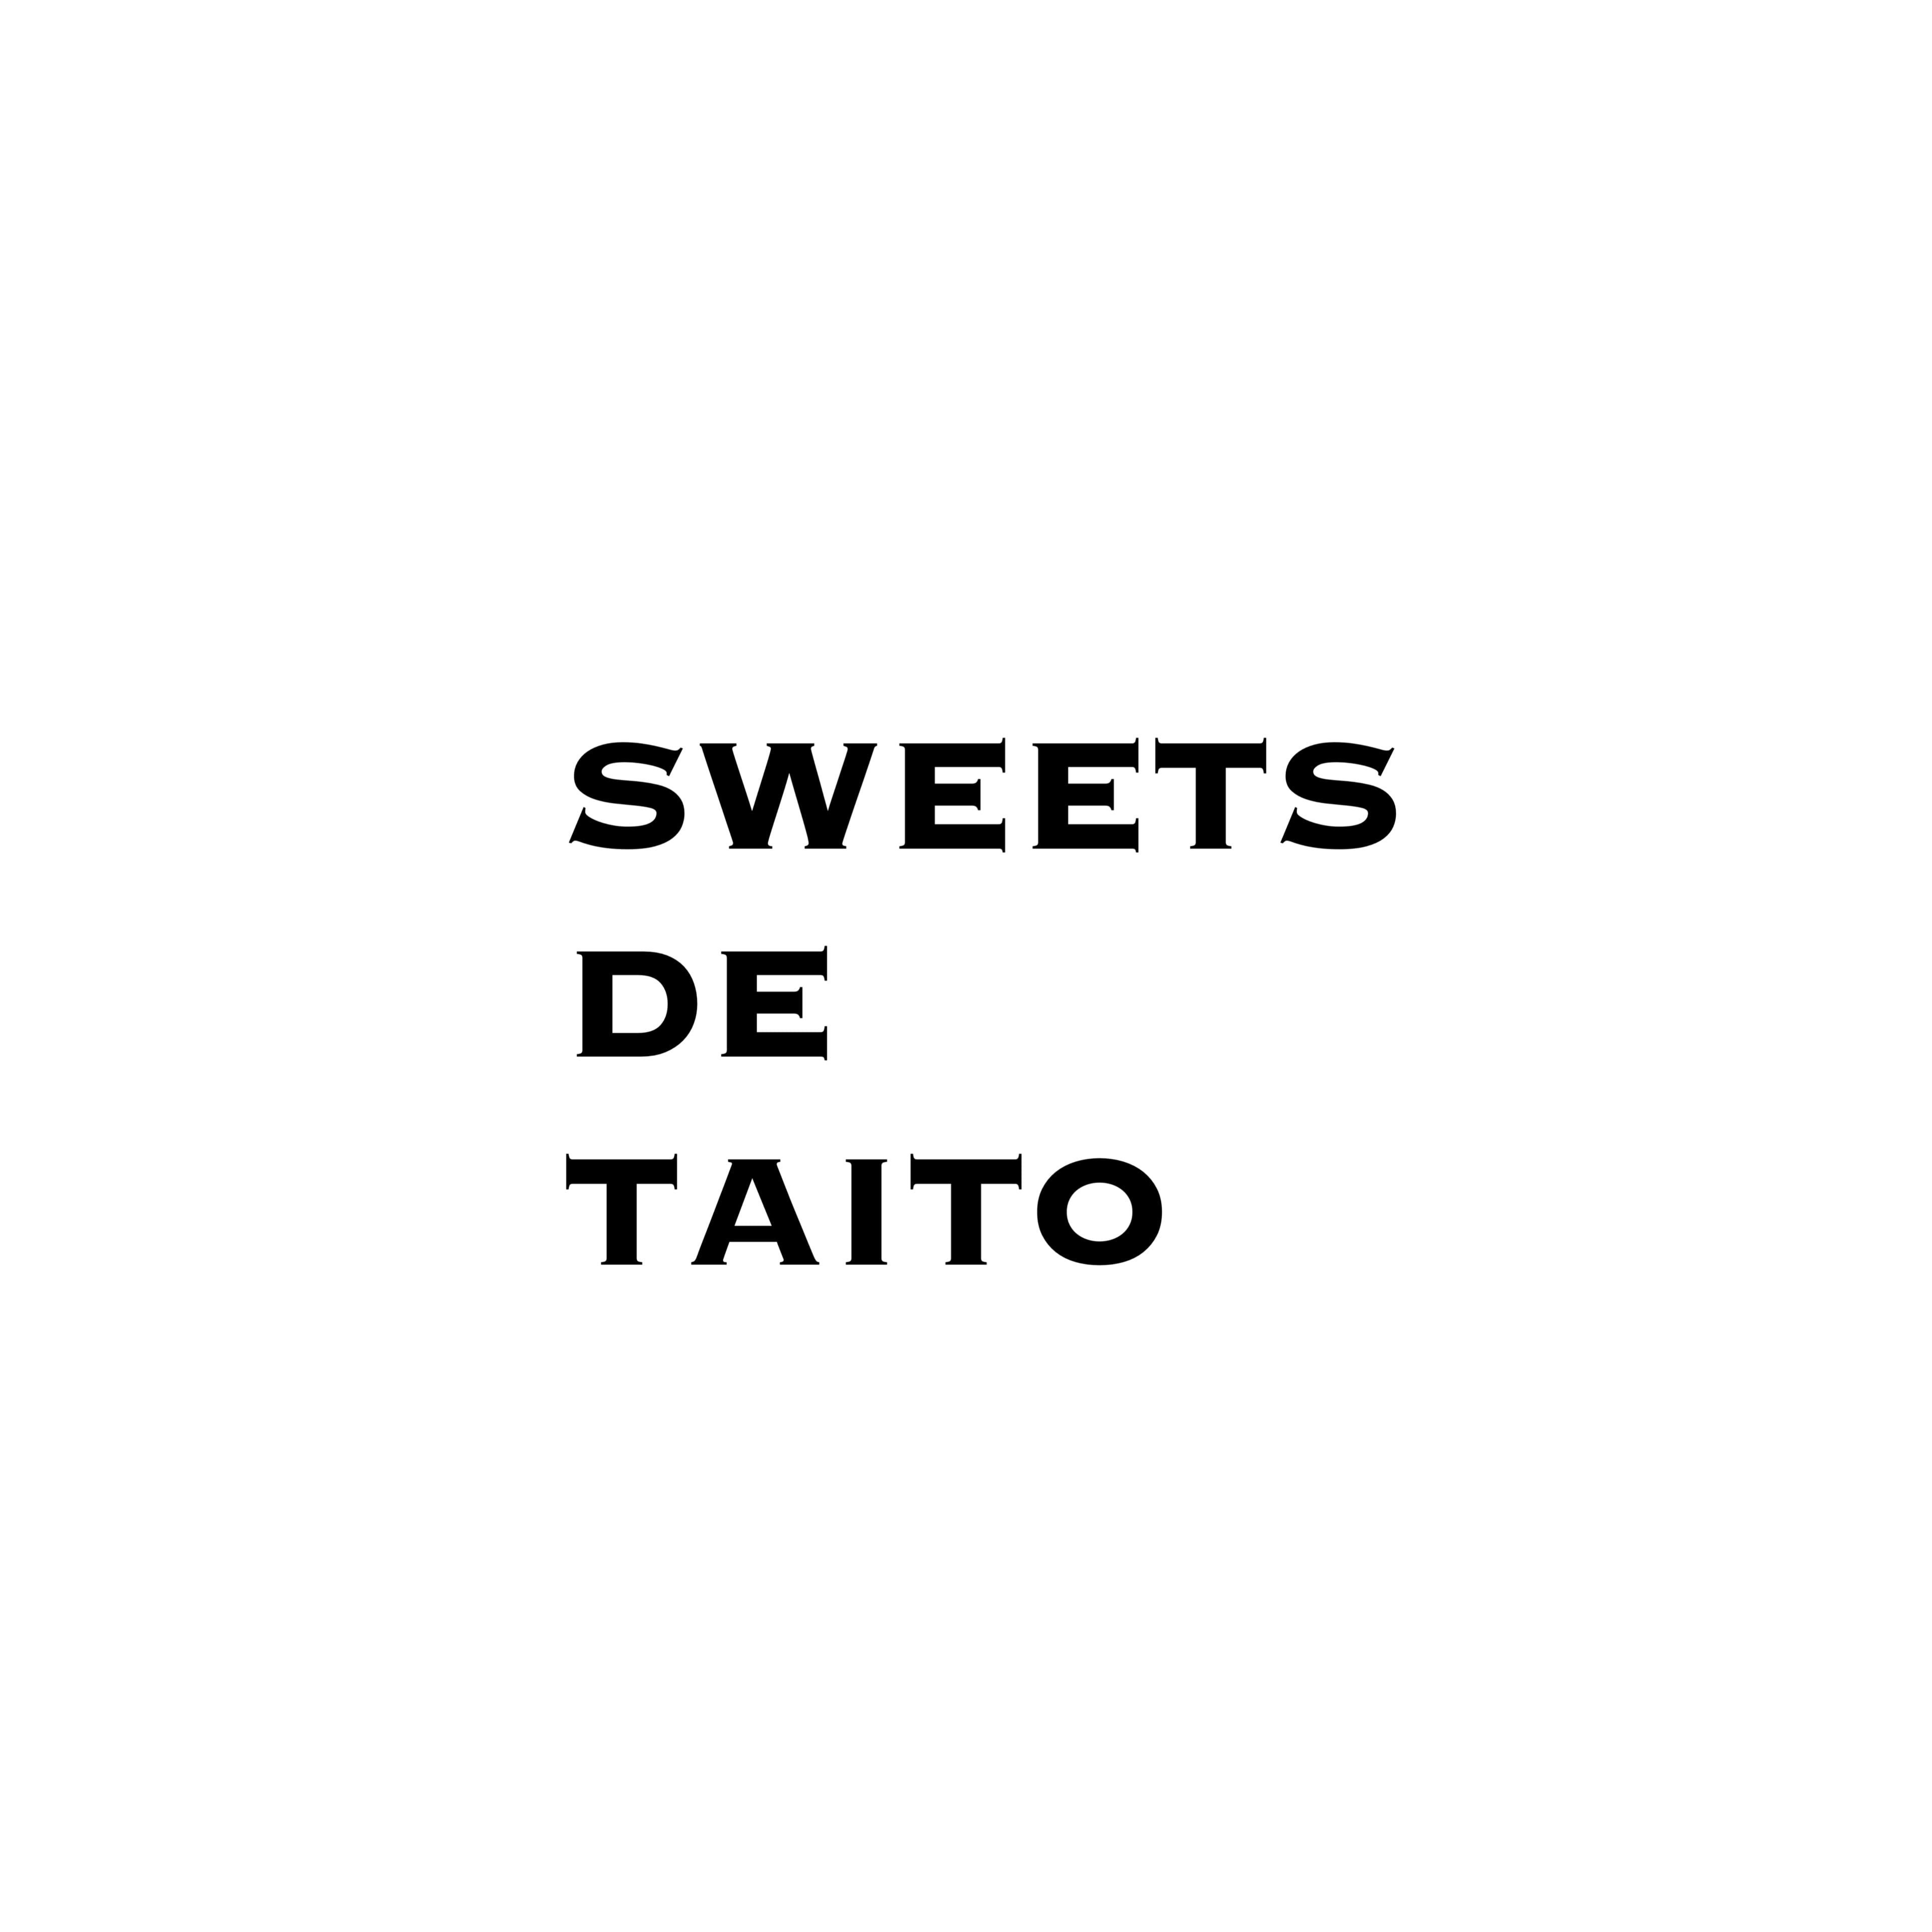 SWEETS DE TAITO